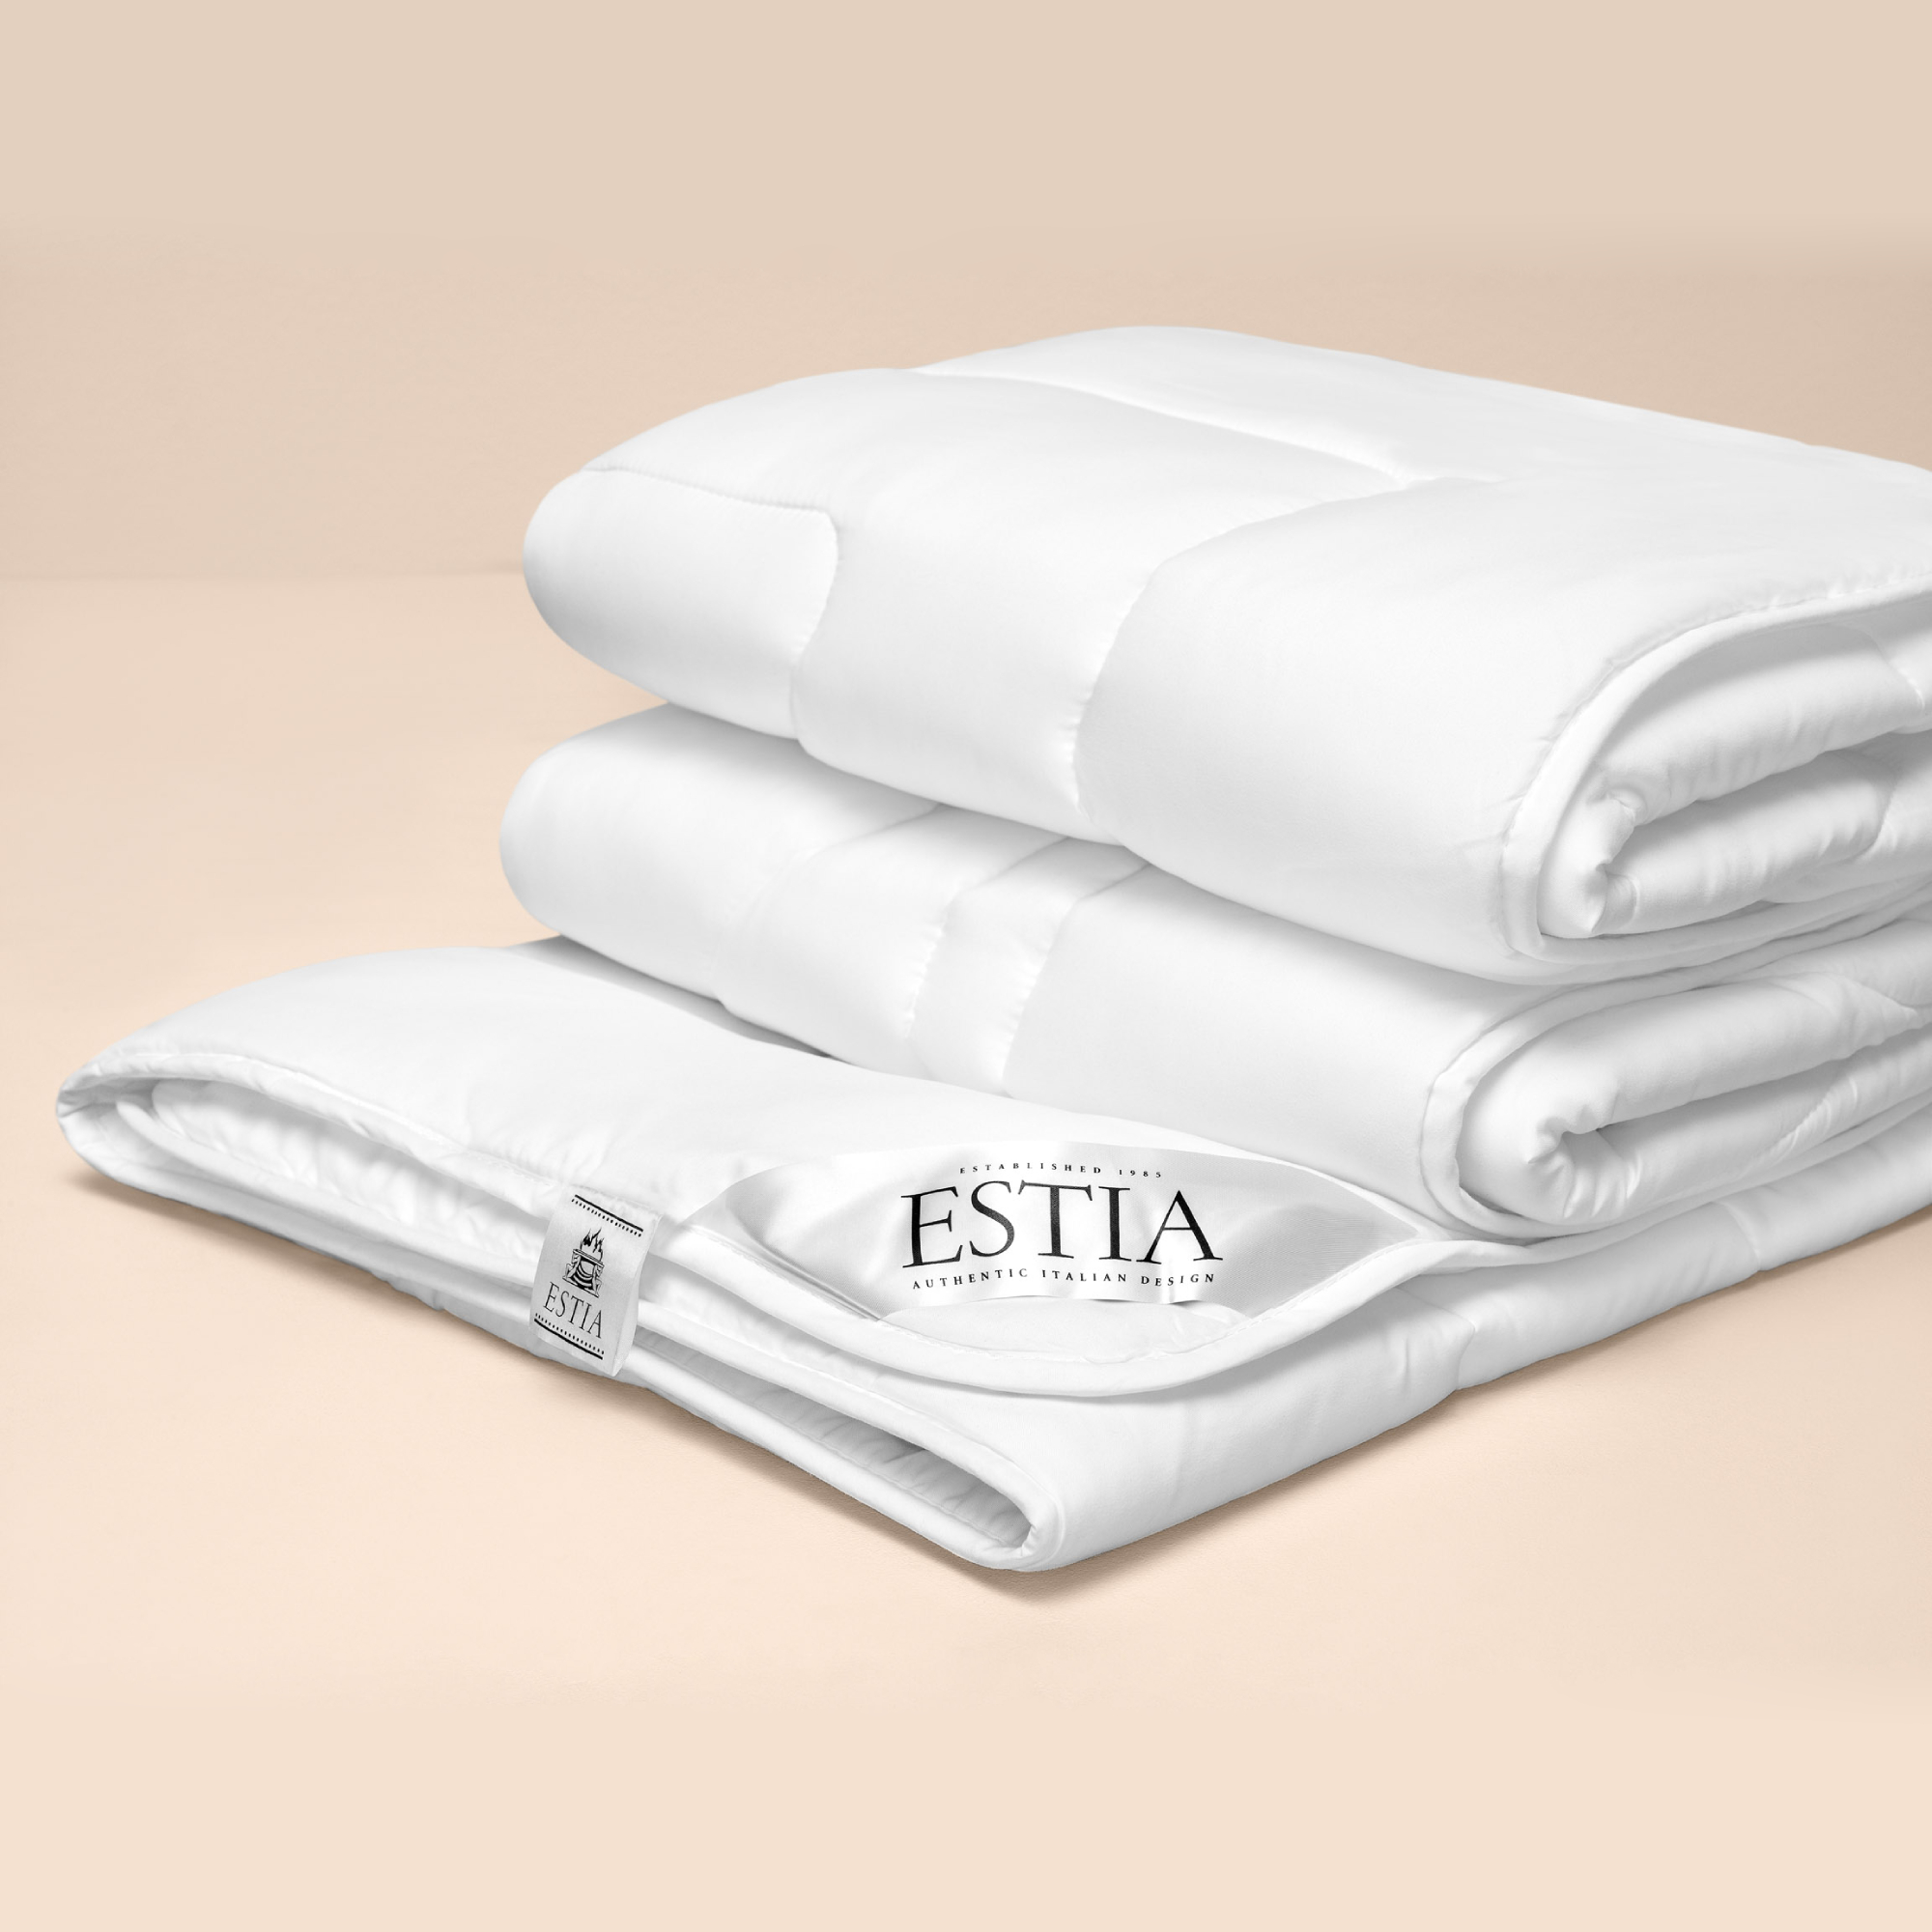 Одеяло Estia Селеста Премиум 200х210 см одеяло estia монтиони легкое 200х210 см